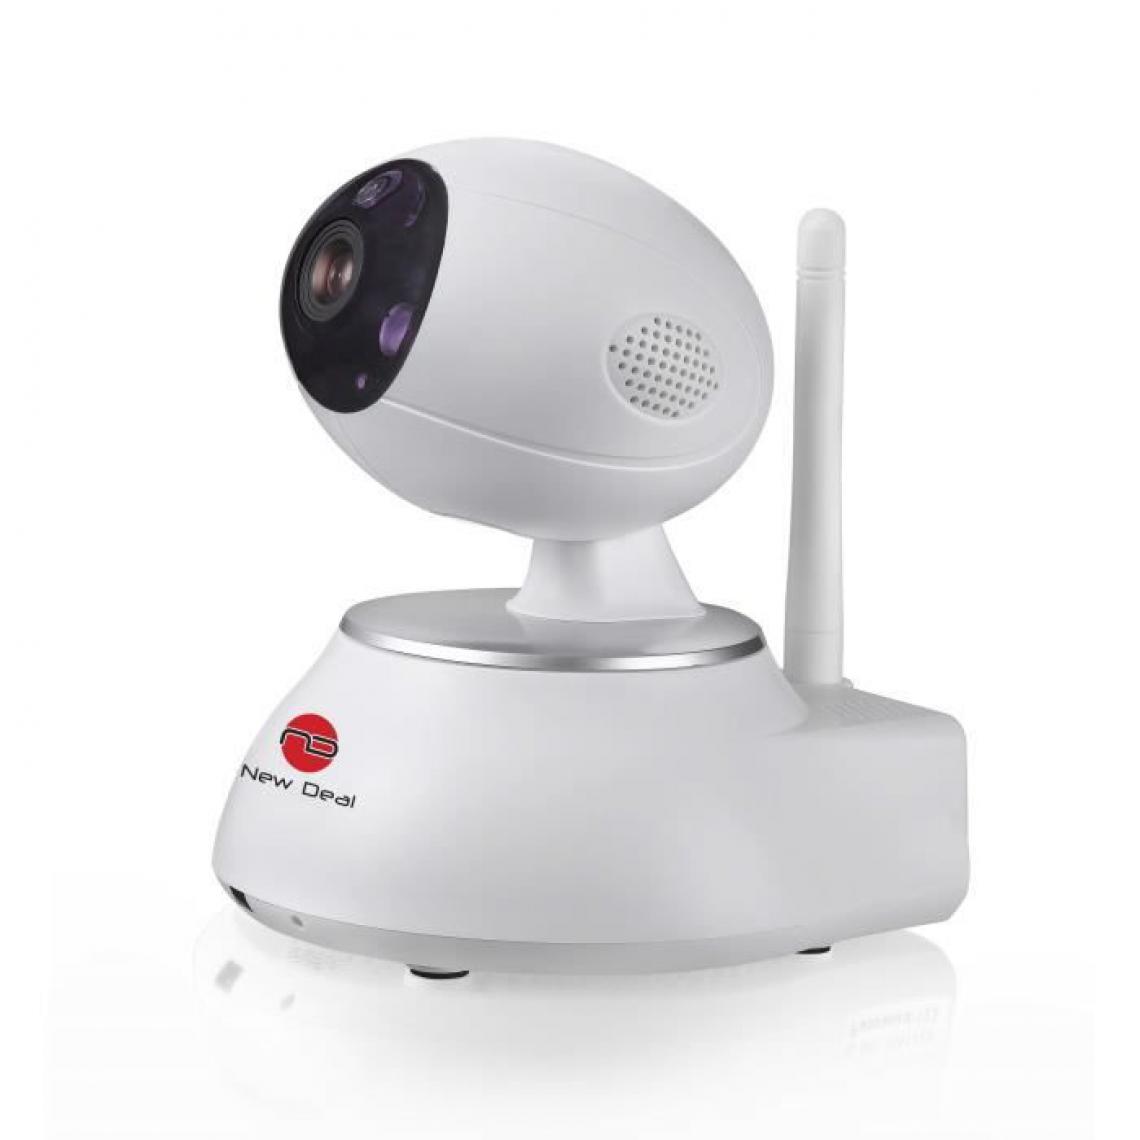 New Deal - NEW DEAL Caméra de surveillance IP motorisée connectée NDS-PT100W ECO - Caméra de surveillance connectée